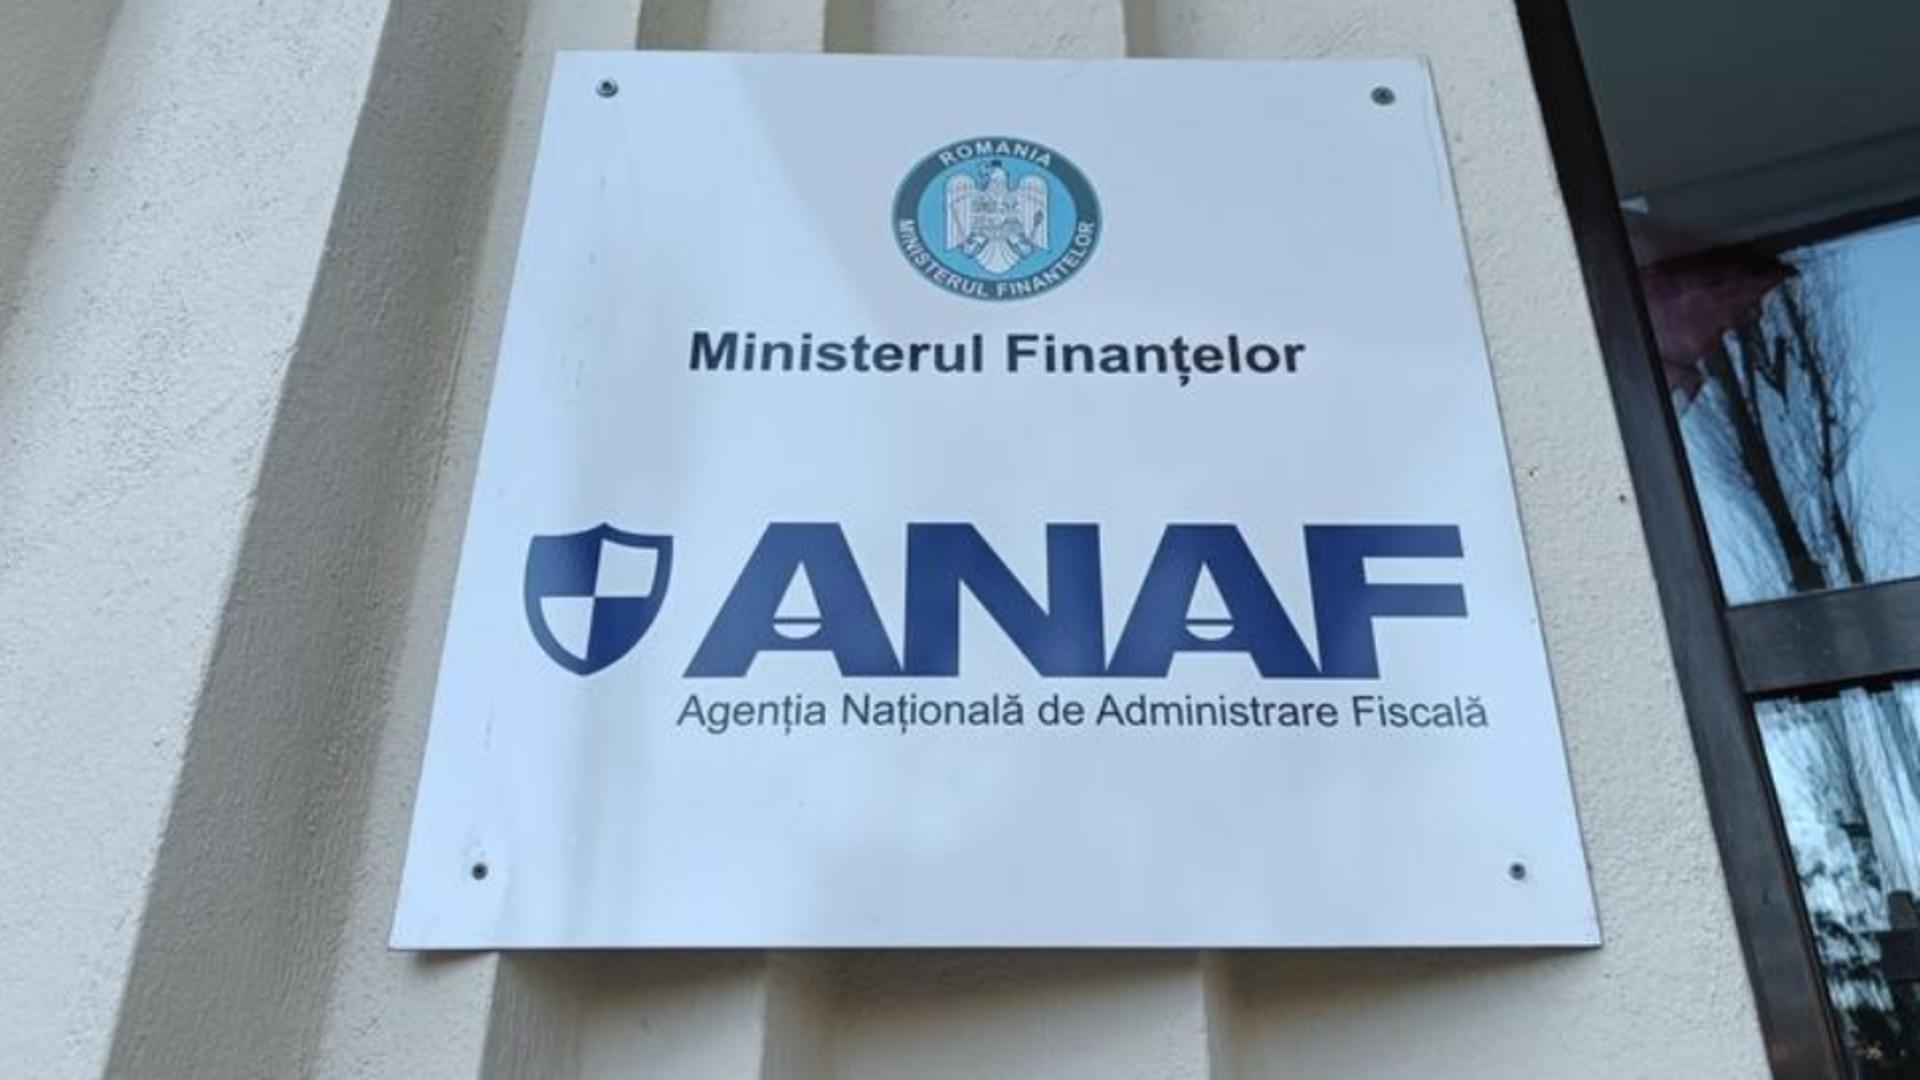 Marile companii de stat, fruntașe pe lista rușinii la ANAF! CFR, Tarom, Unifarm, datoare fiscului cu miliarde de lei